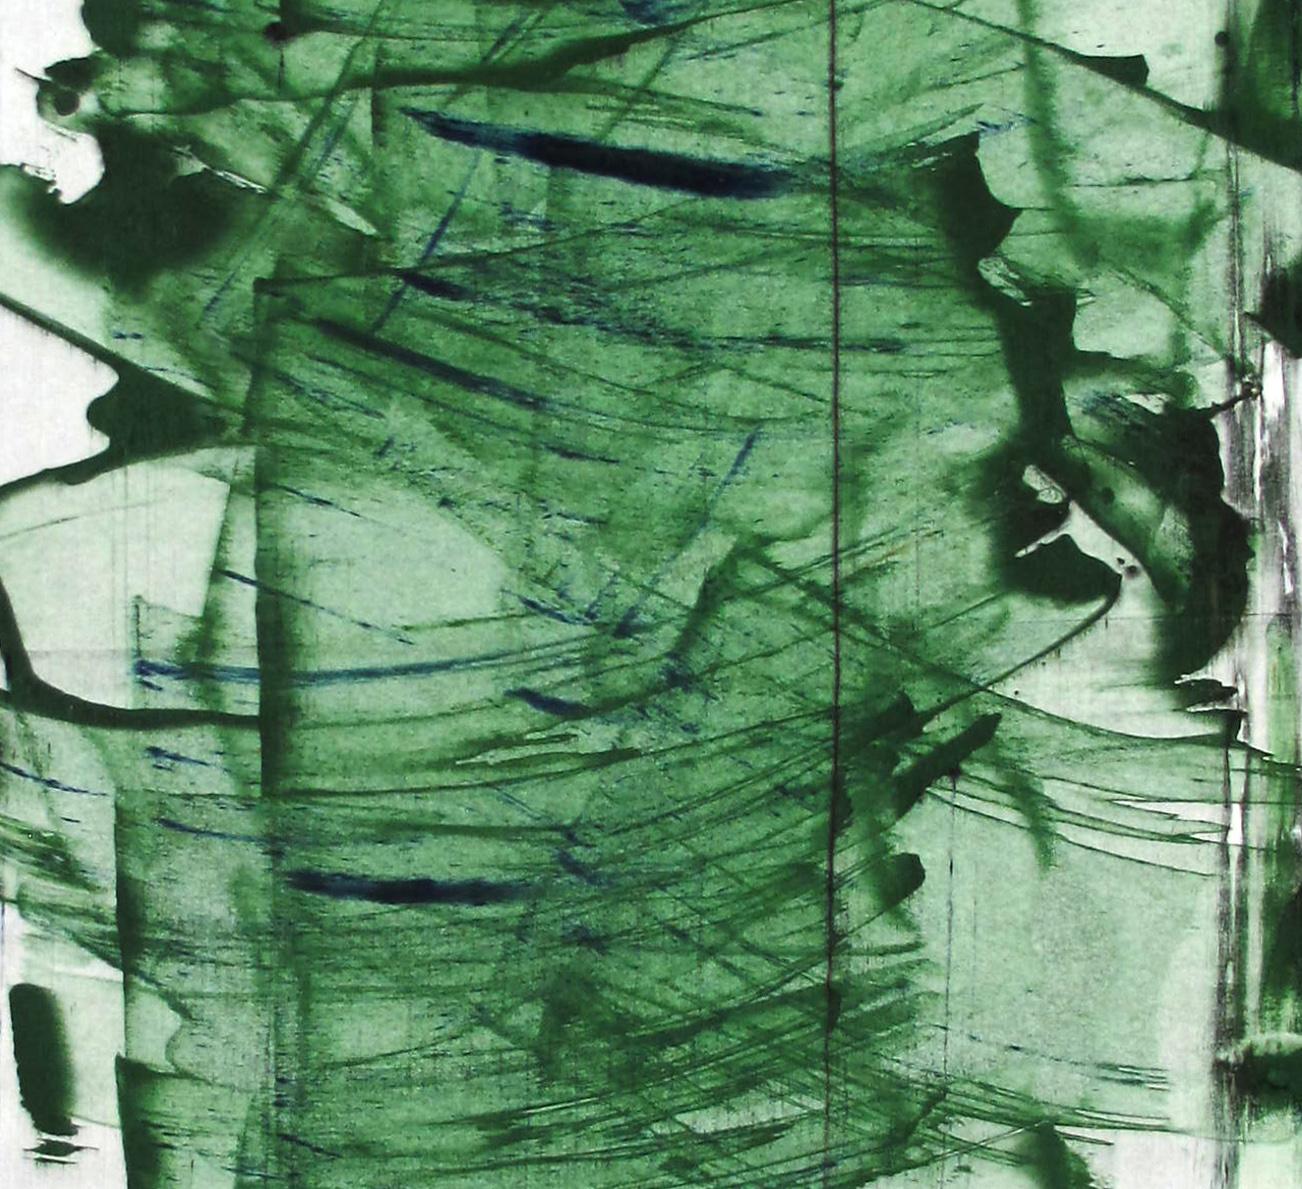 8 (peinture abstraite)
Acrylique et pigments sur papier - Non encadré.

Emma Godebska est une artiste abstraite française qui vit à Nîmes, en France.

Son utilisation de pigments naturels, reflétant la nature elle-même, est en dialogue avec la